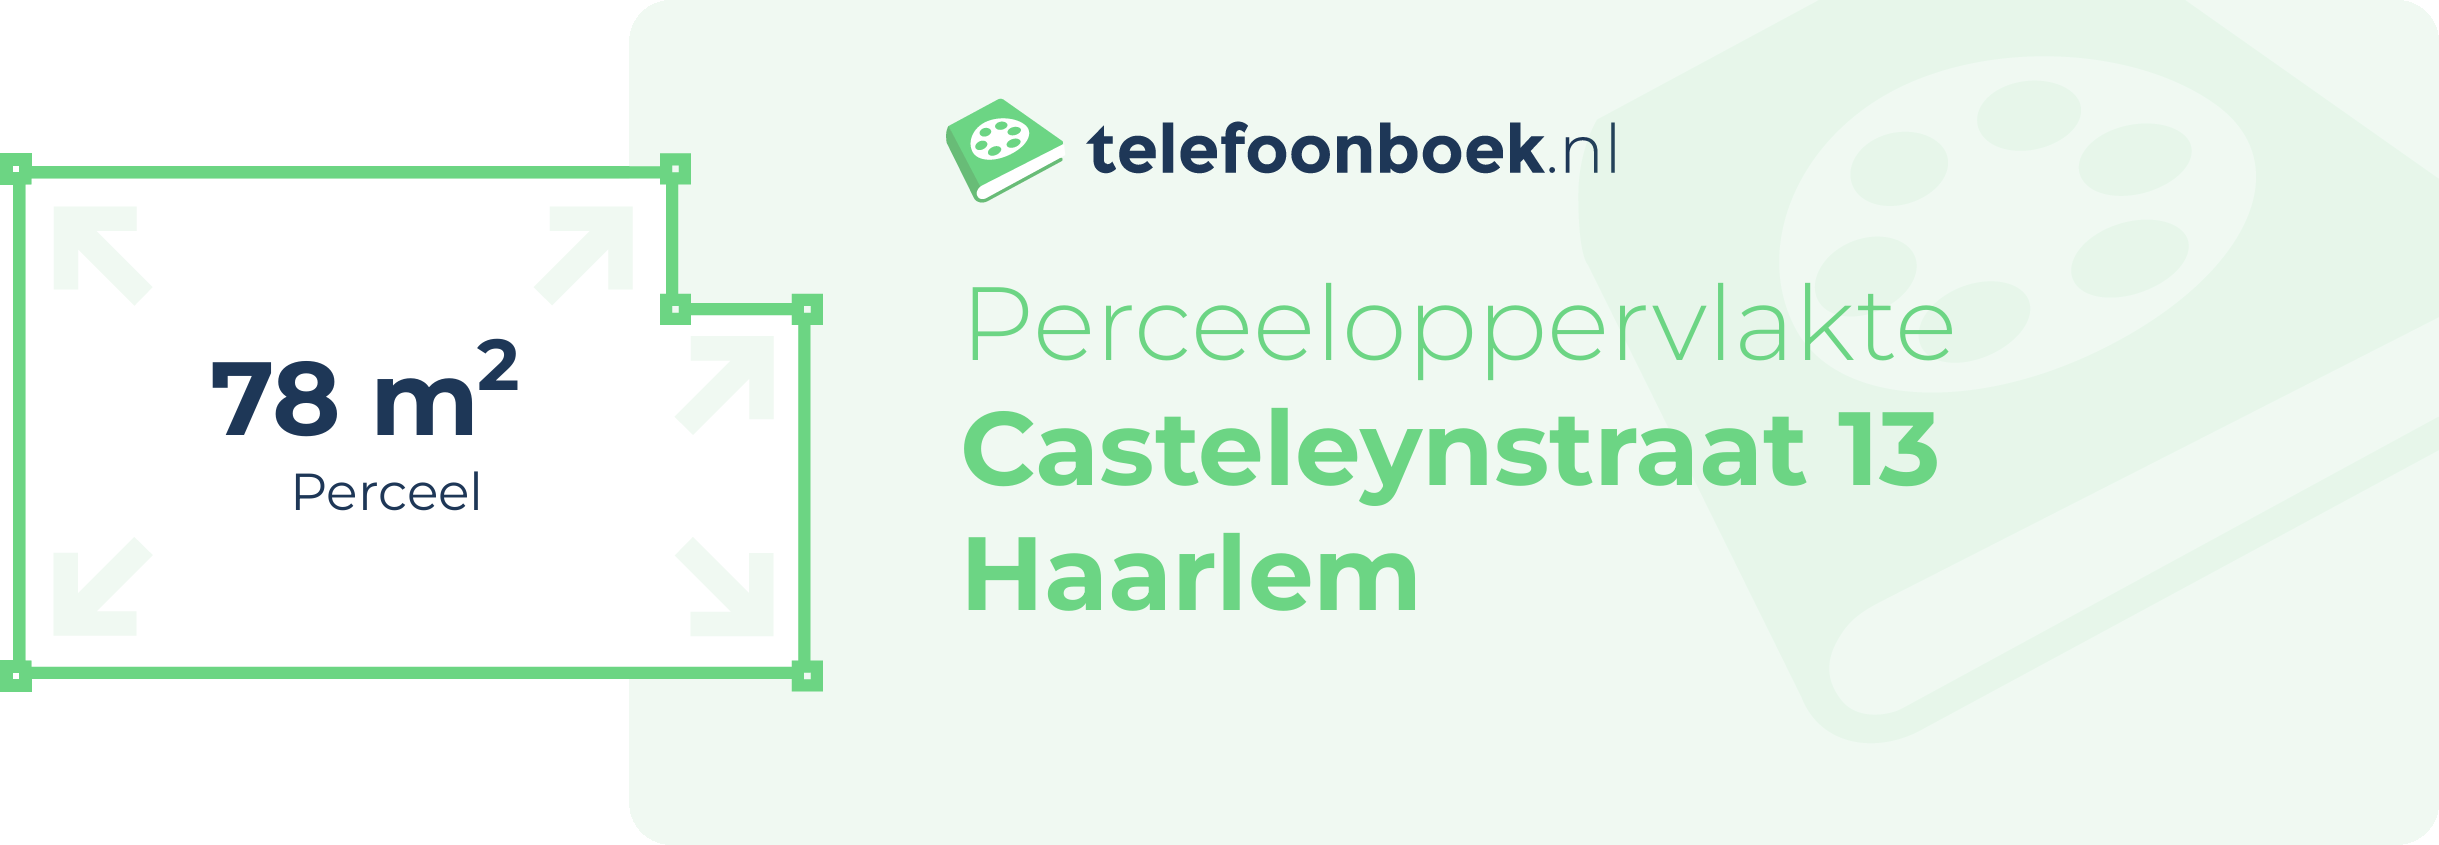 Perceeloppervlakte Casteleynstraat 13 Haarlem